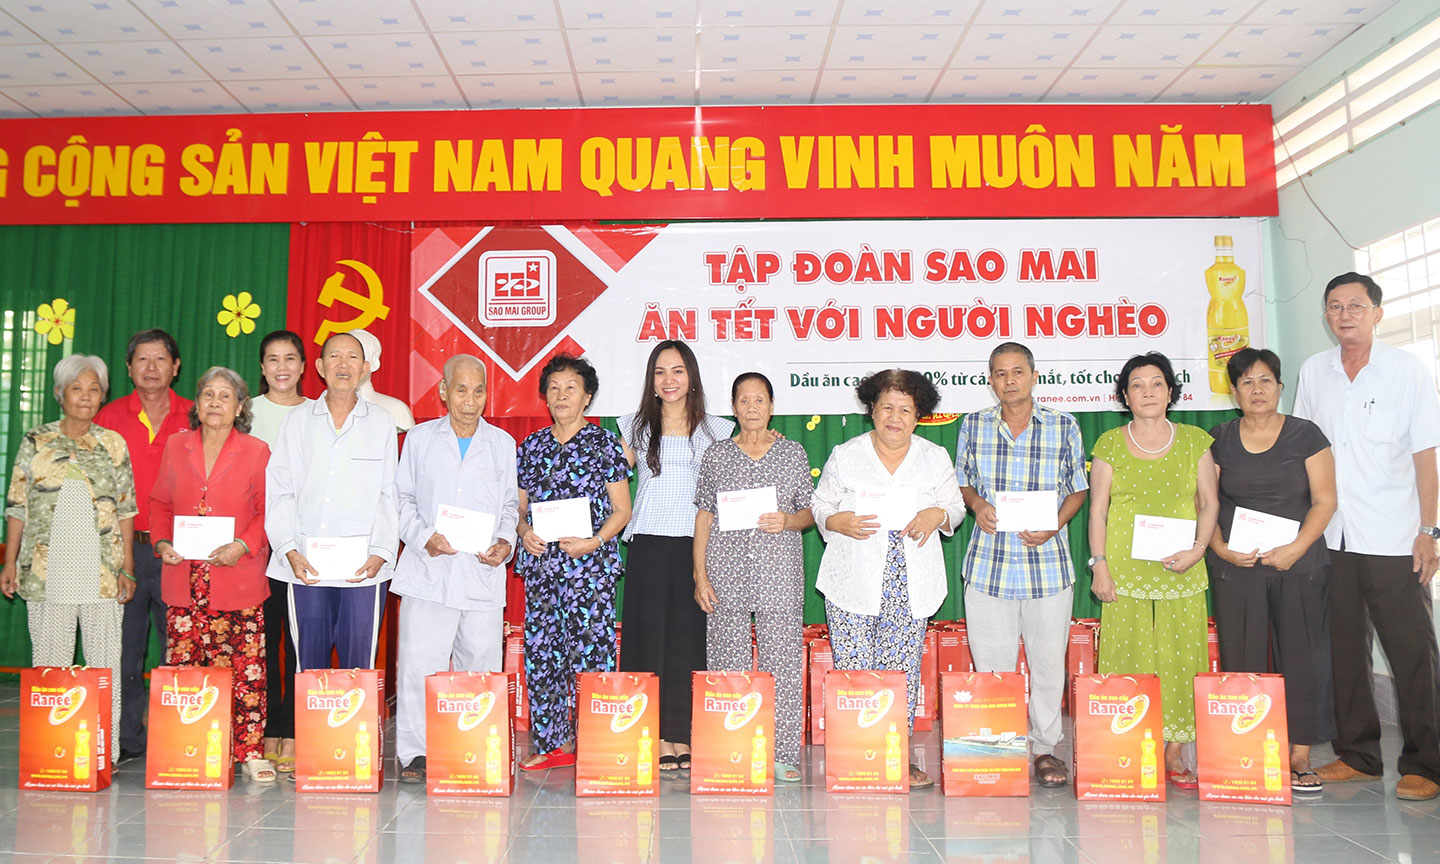 Bà Lê Thị Nguyệt Thu - Chủ tịch HĐQT Tập đoàn Sao Mai (ở giữa) tặng quà cho những mảnh đời cơ nhỡ, kém may mắn trong xã hội.